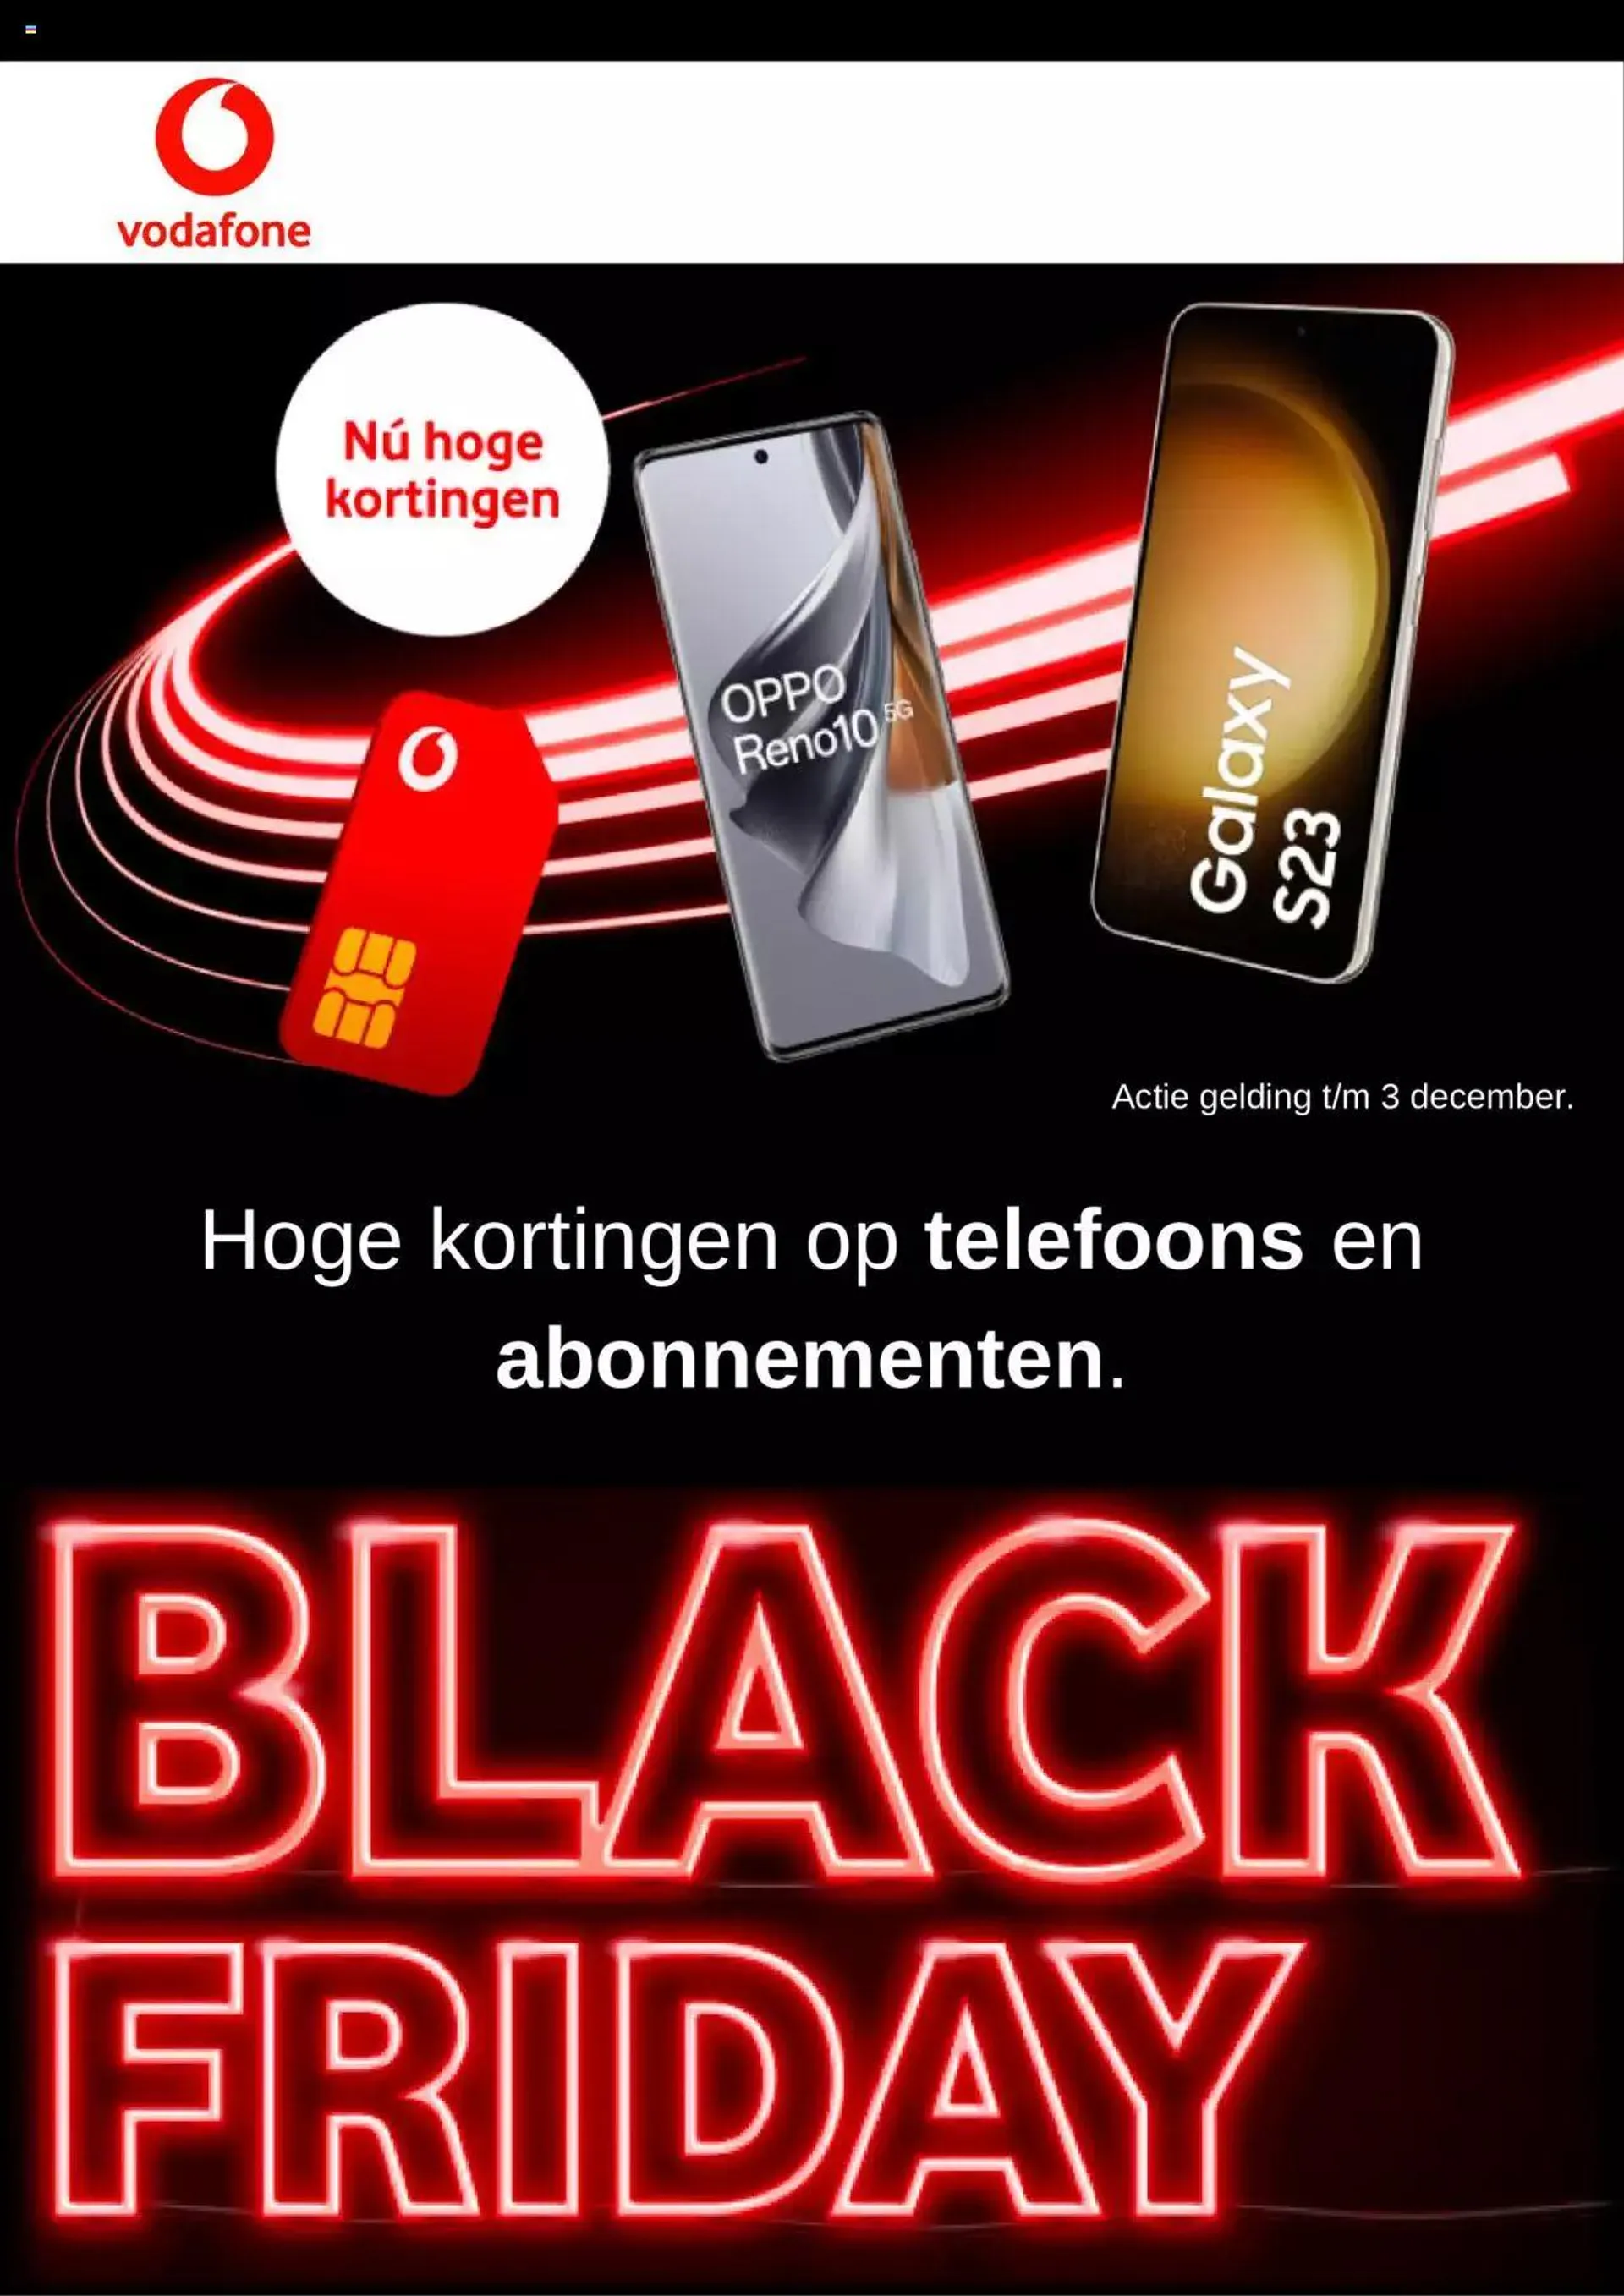 Vodafone - Black Friday